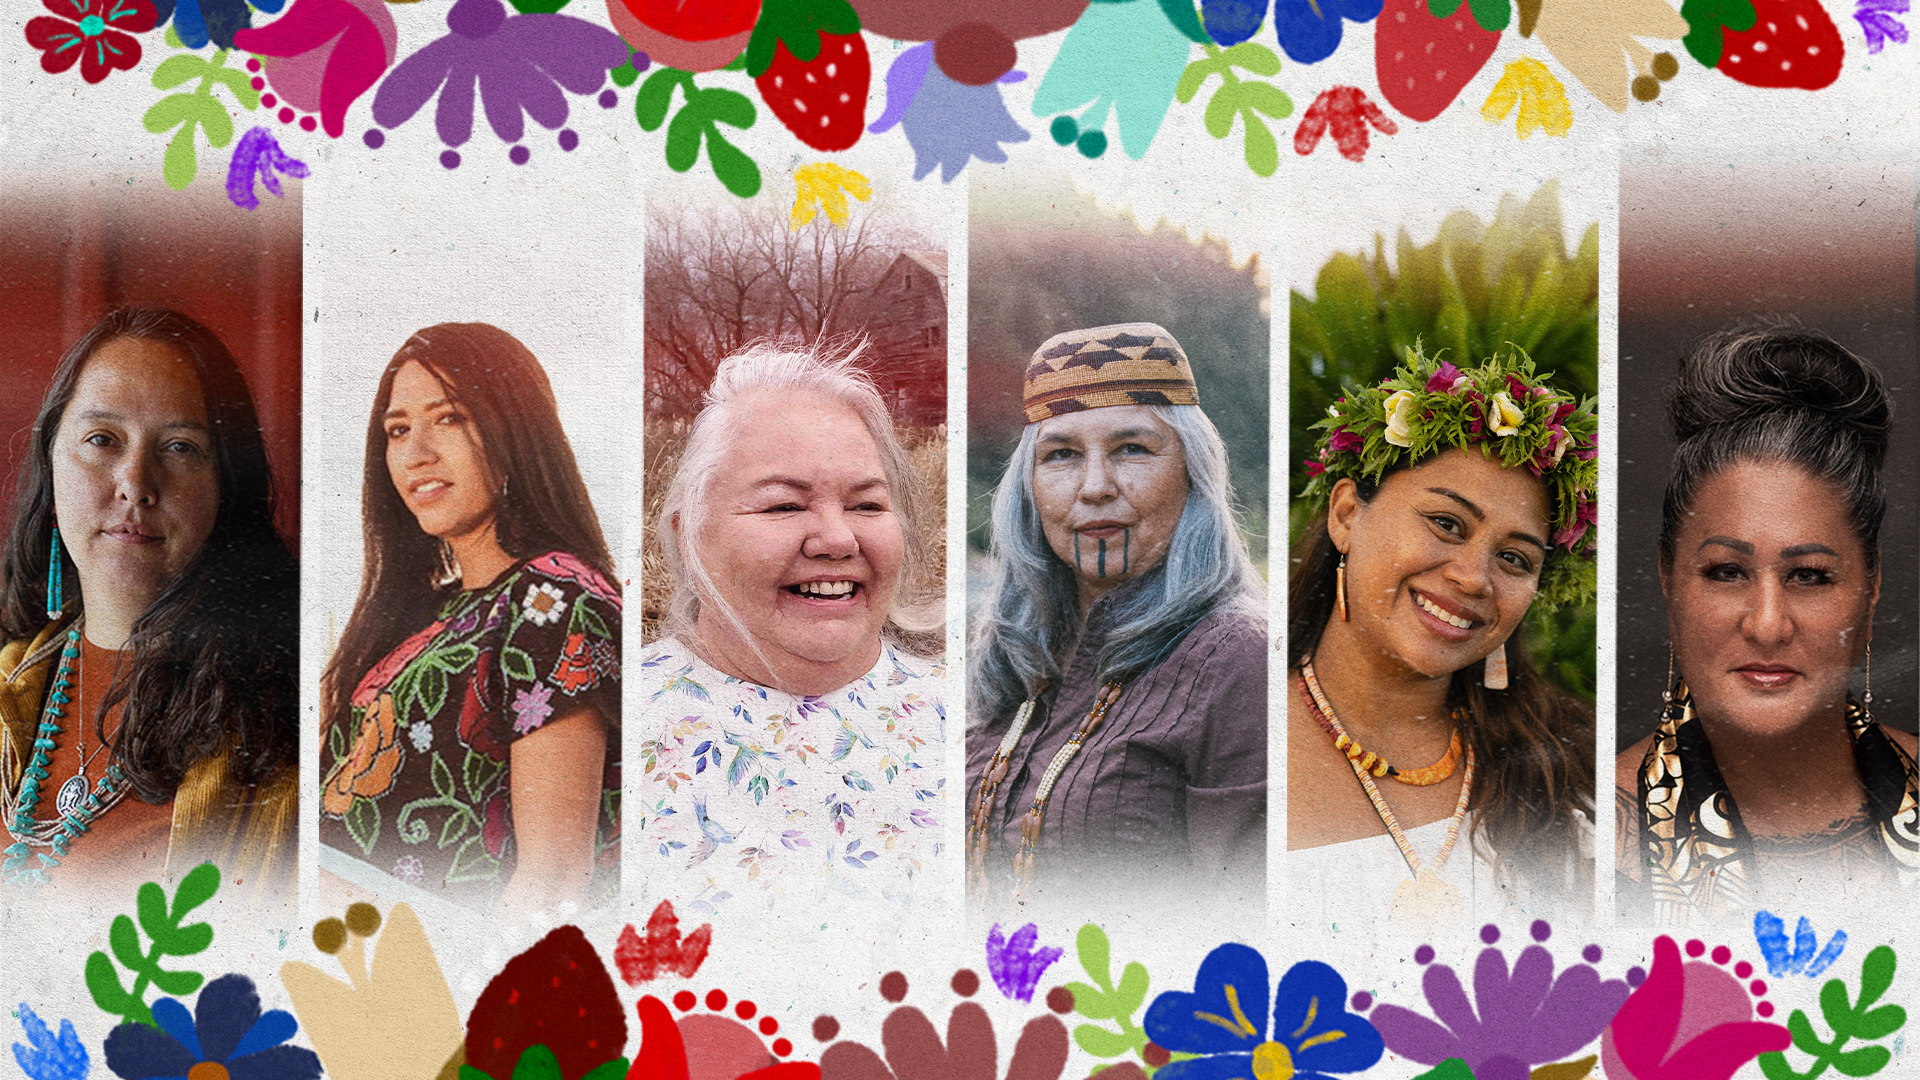 Seis matriarcas divinas que están viviendo nuestros sueños indígenas